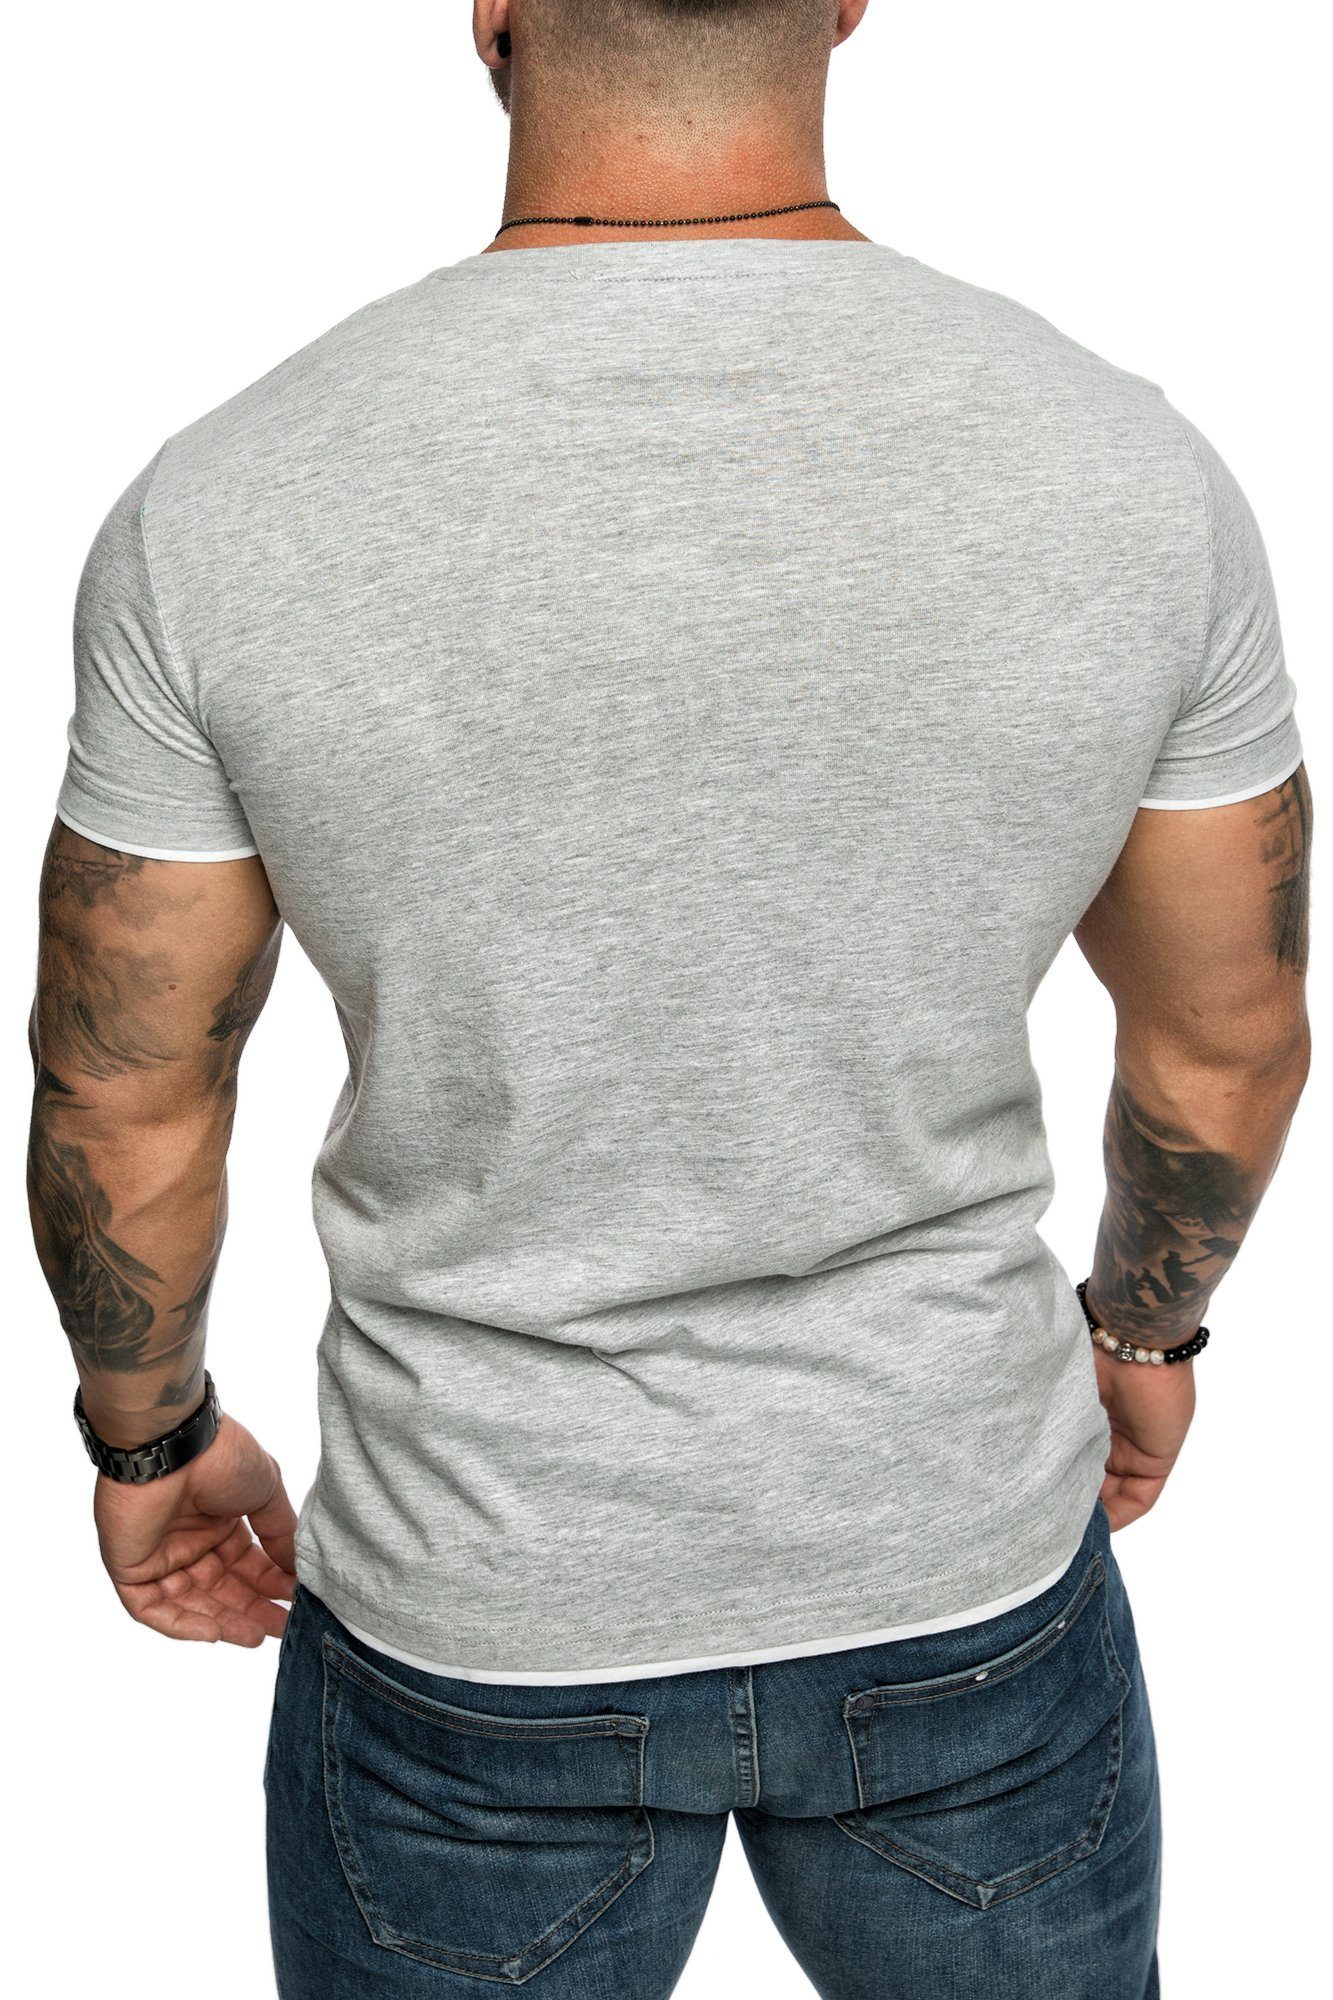 Herren Farbig T-Shirt Grau/Weiß Amaci&Sons Basic LAKEWOOD Slim-Fit Doppel Shirt Rundhalsausschnitt mit